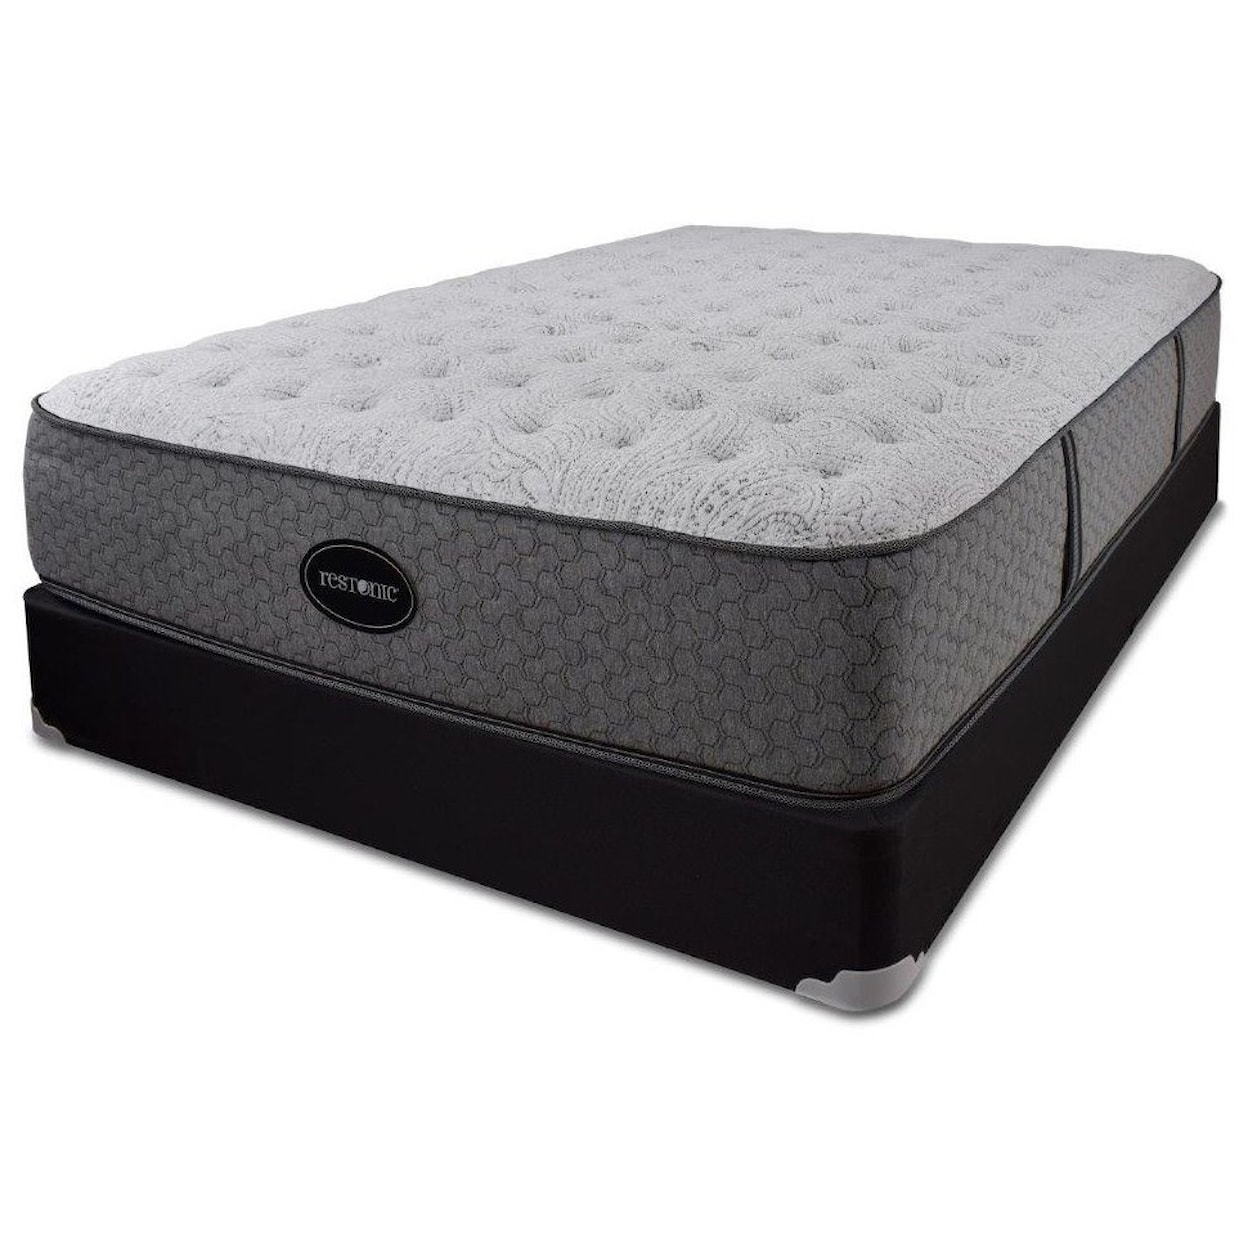 Restonic Blackcomb Cushion Firm Queen Comfort Firm Mattress Set